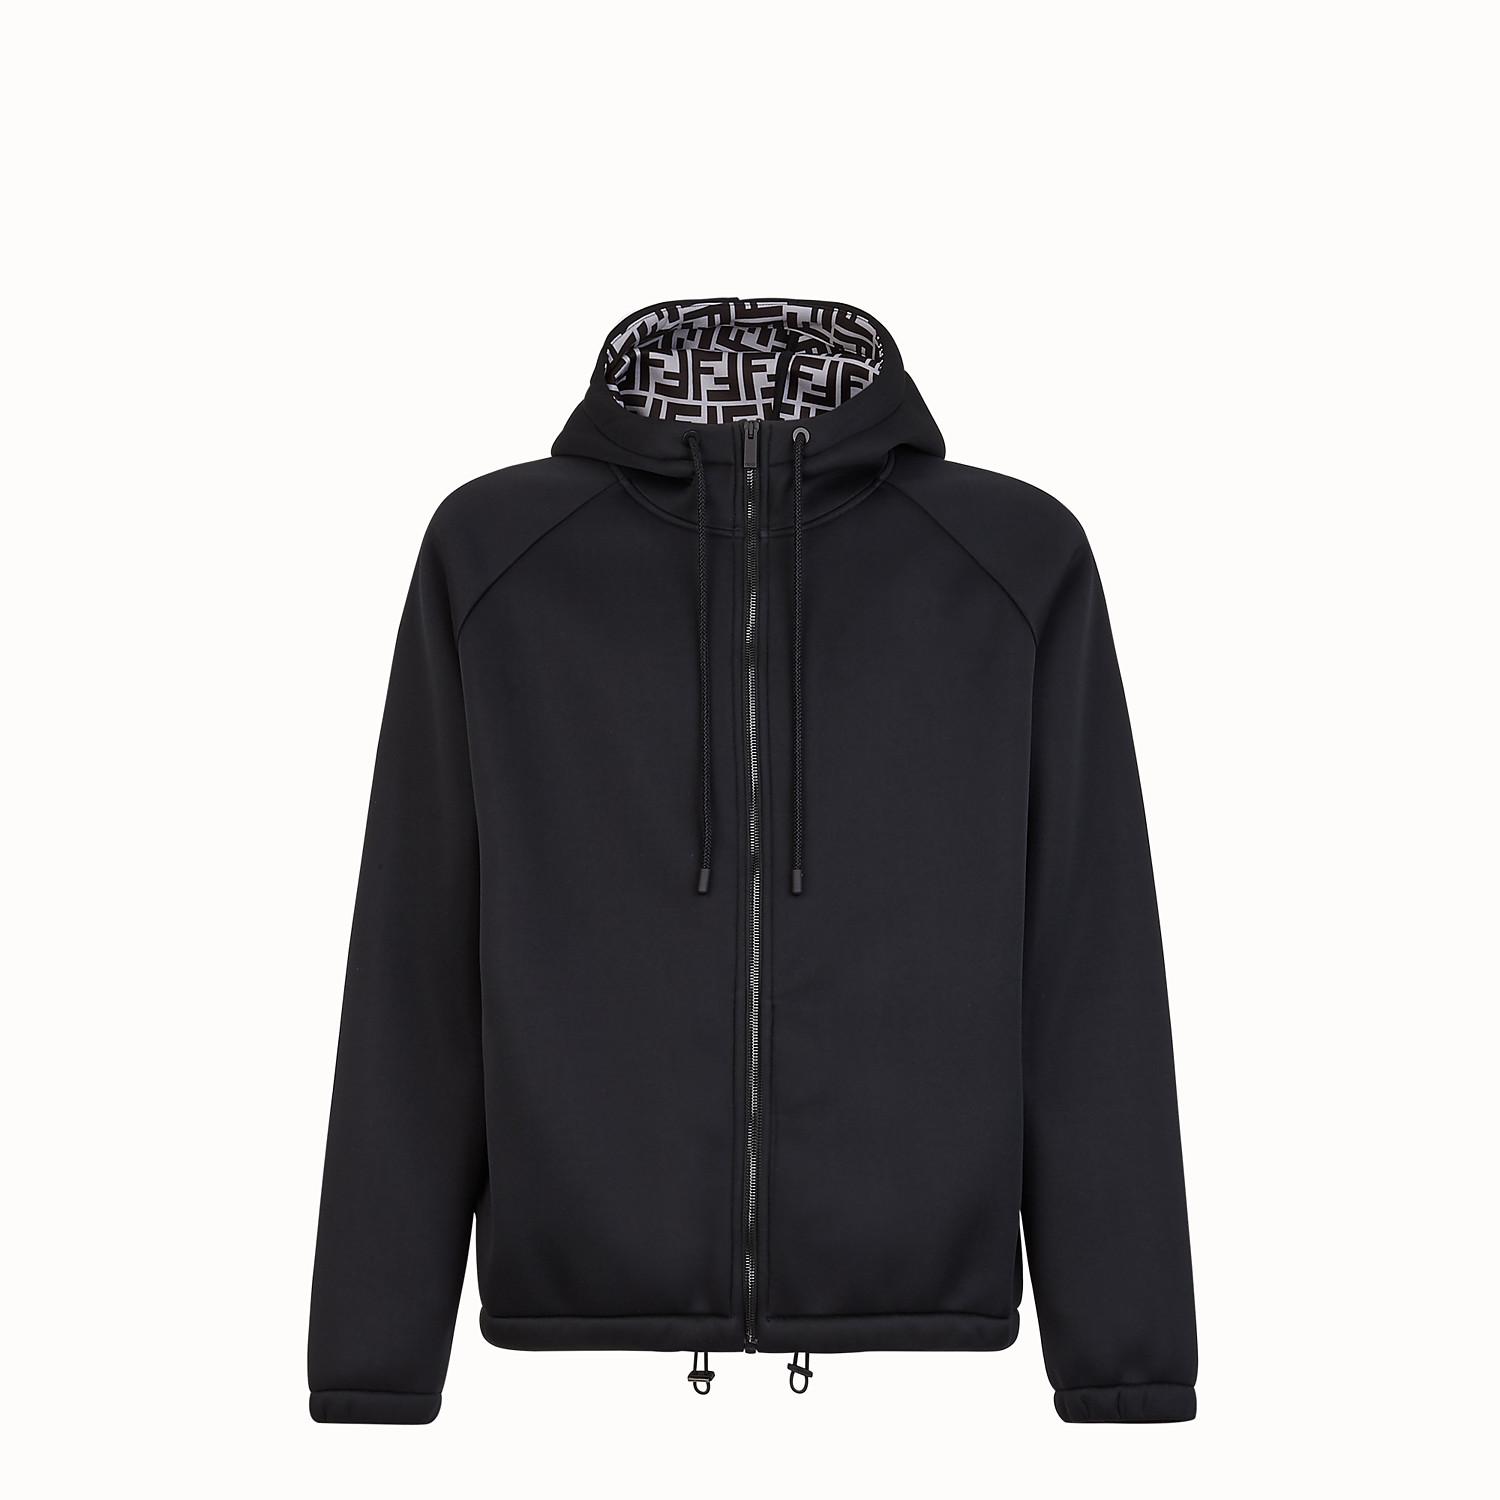 Fendi Synthetic Sweatshirt in Black for Men - Lyst